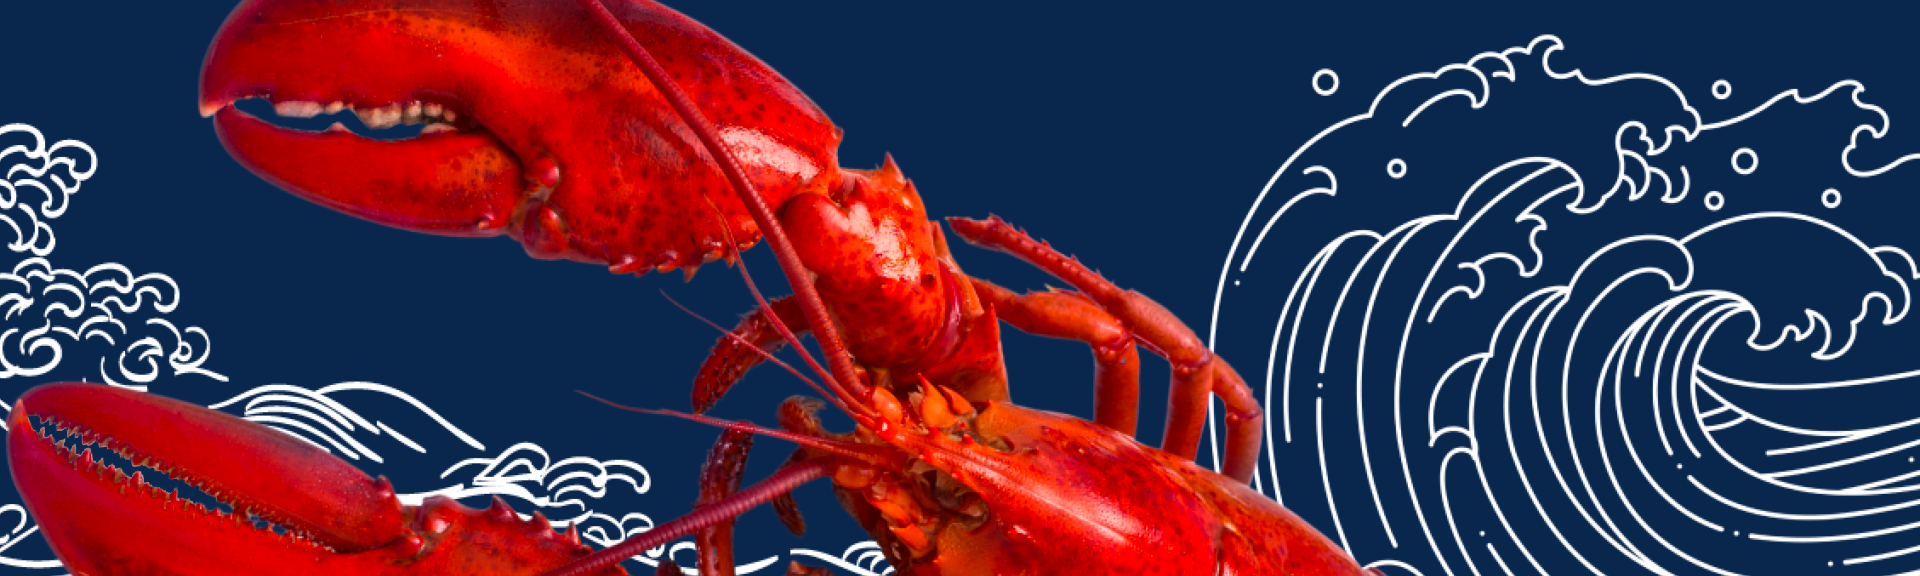 Maine Lobster Casserole recipe image